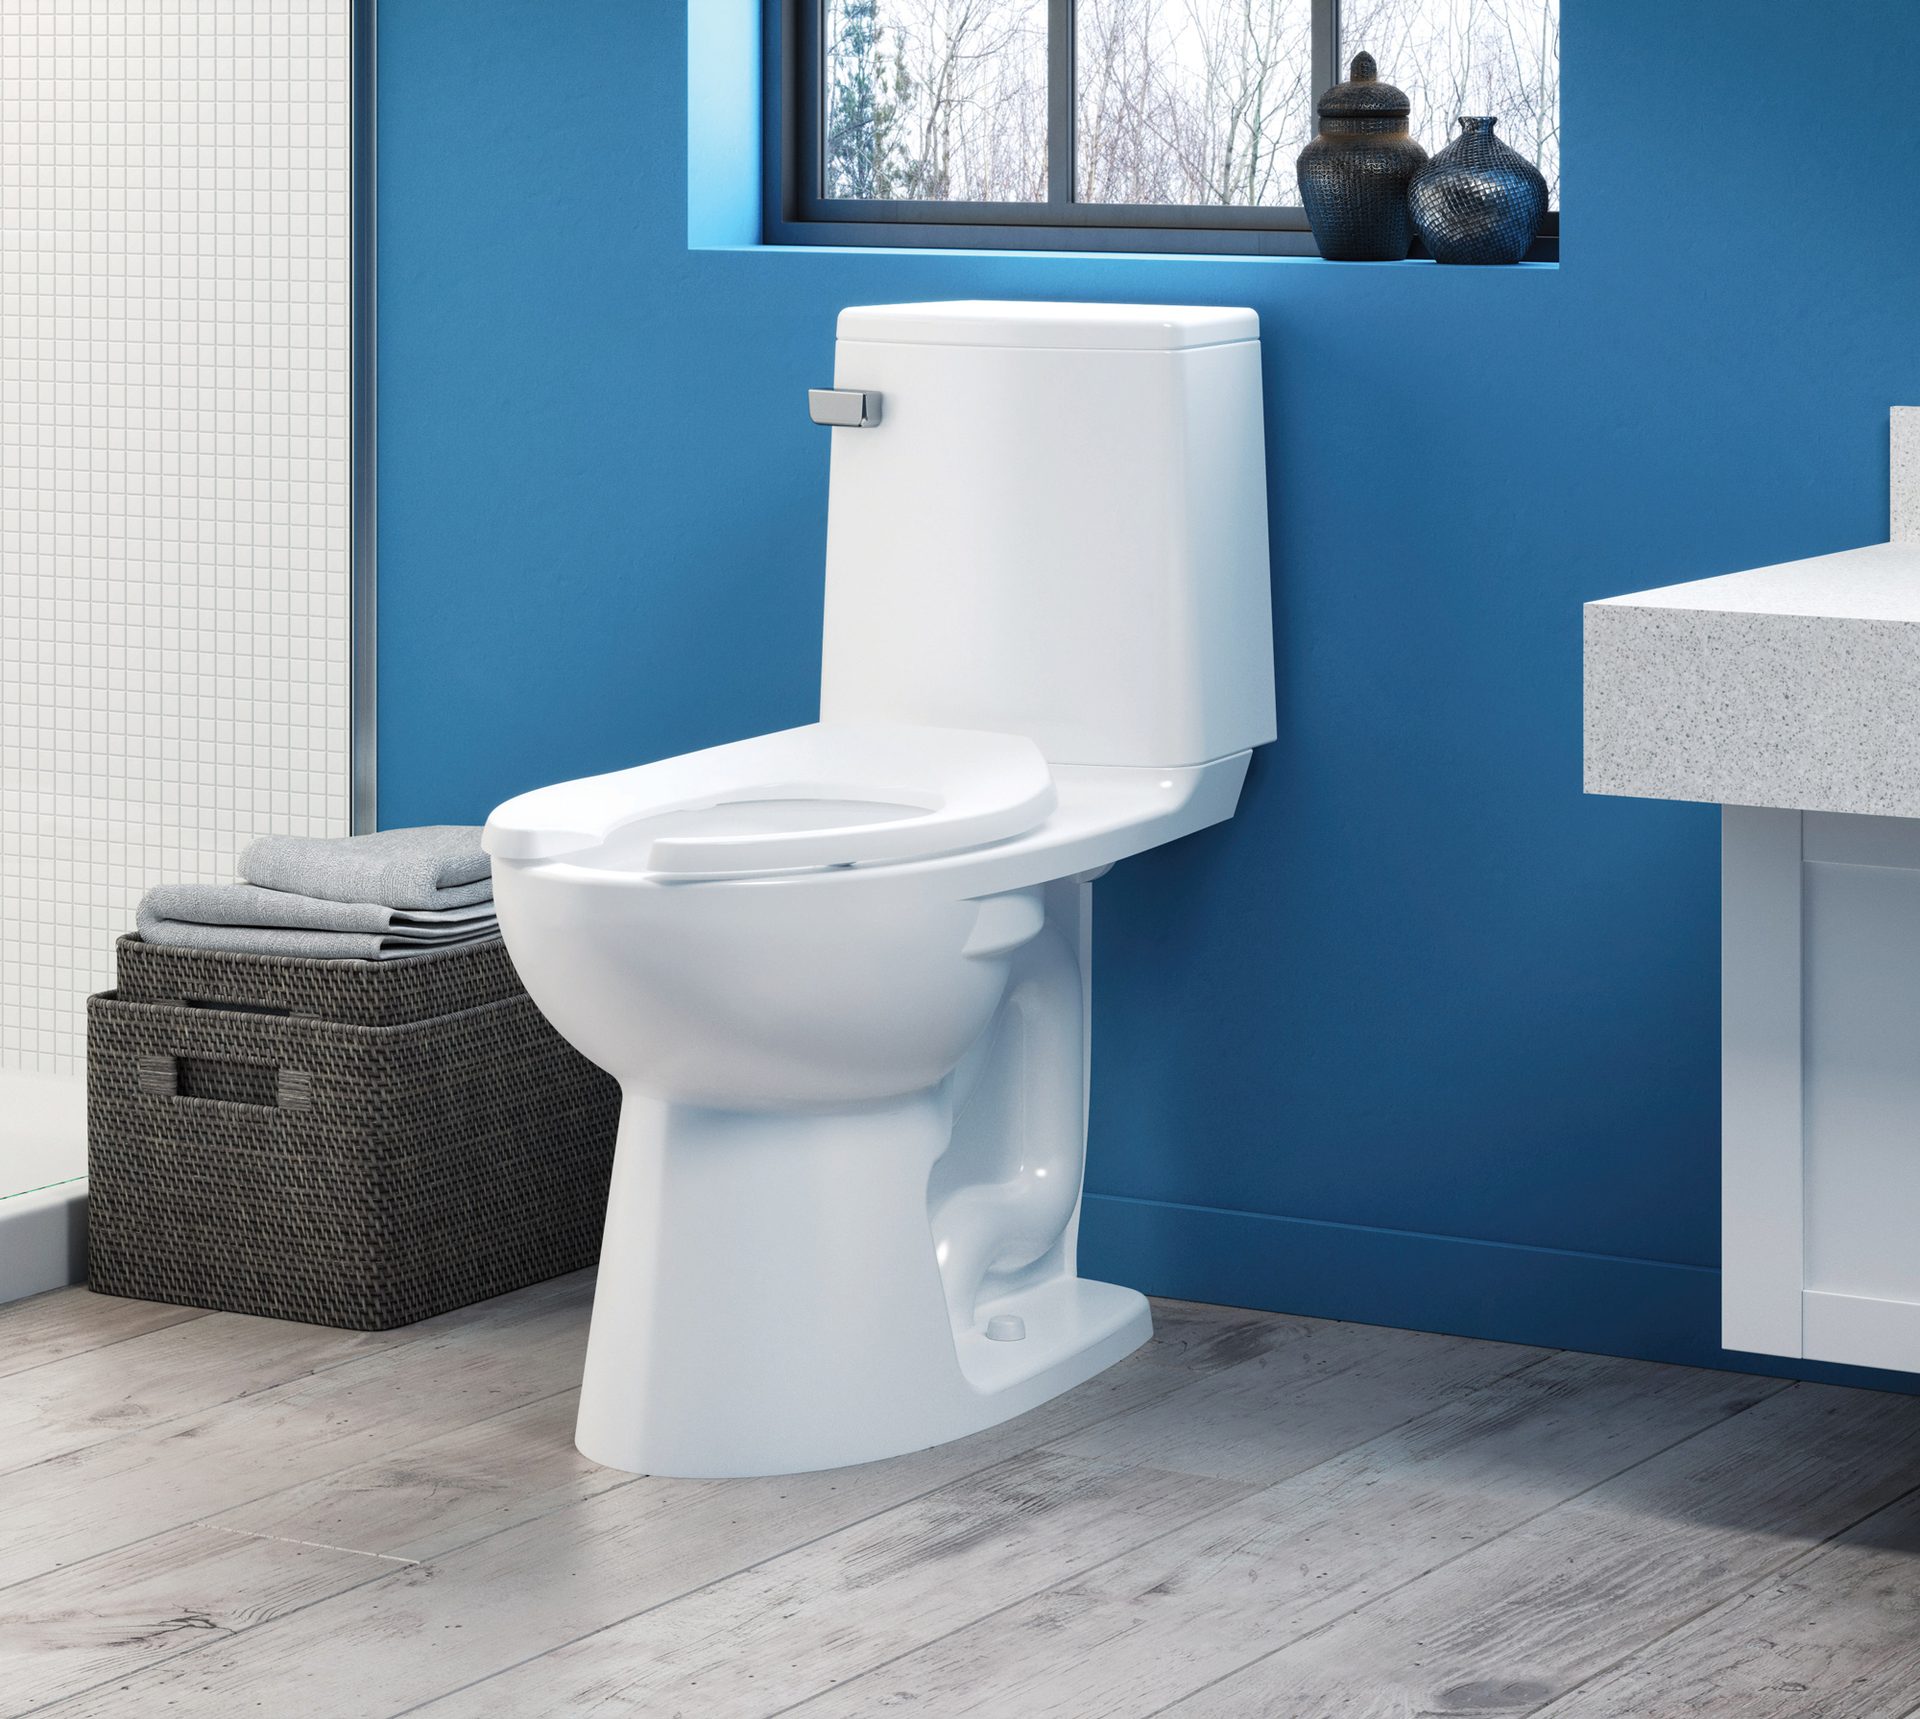 Toilet seat, Plumbing fixture, Interior design, Property, Blue, Purple, Bathroom, Window, Wood